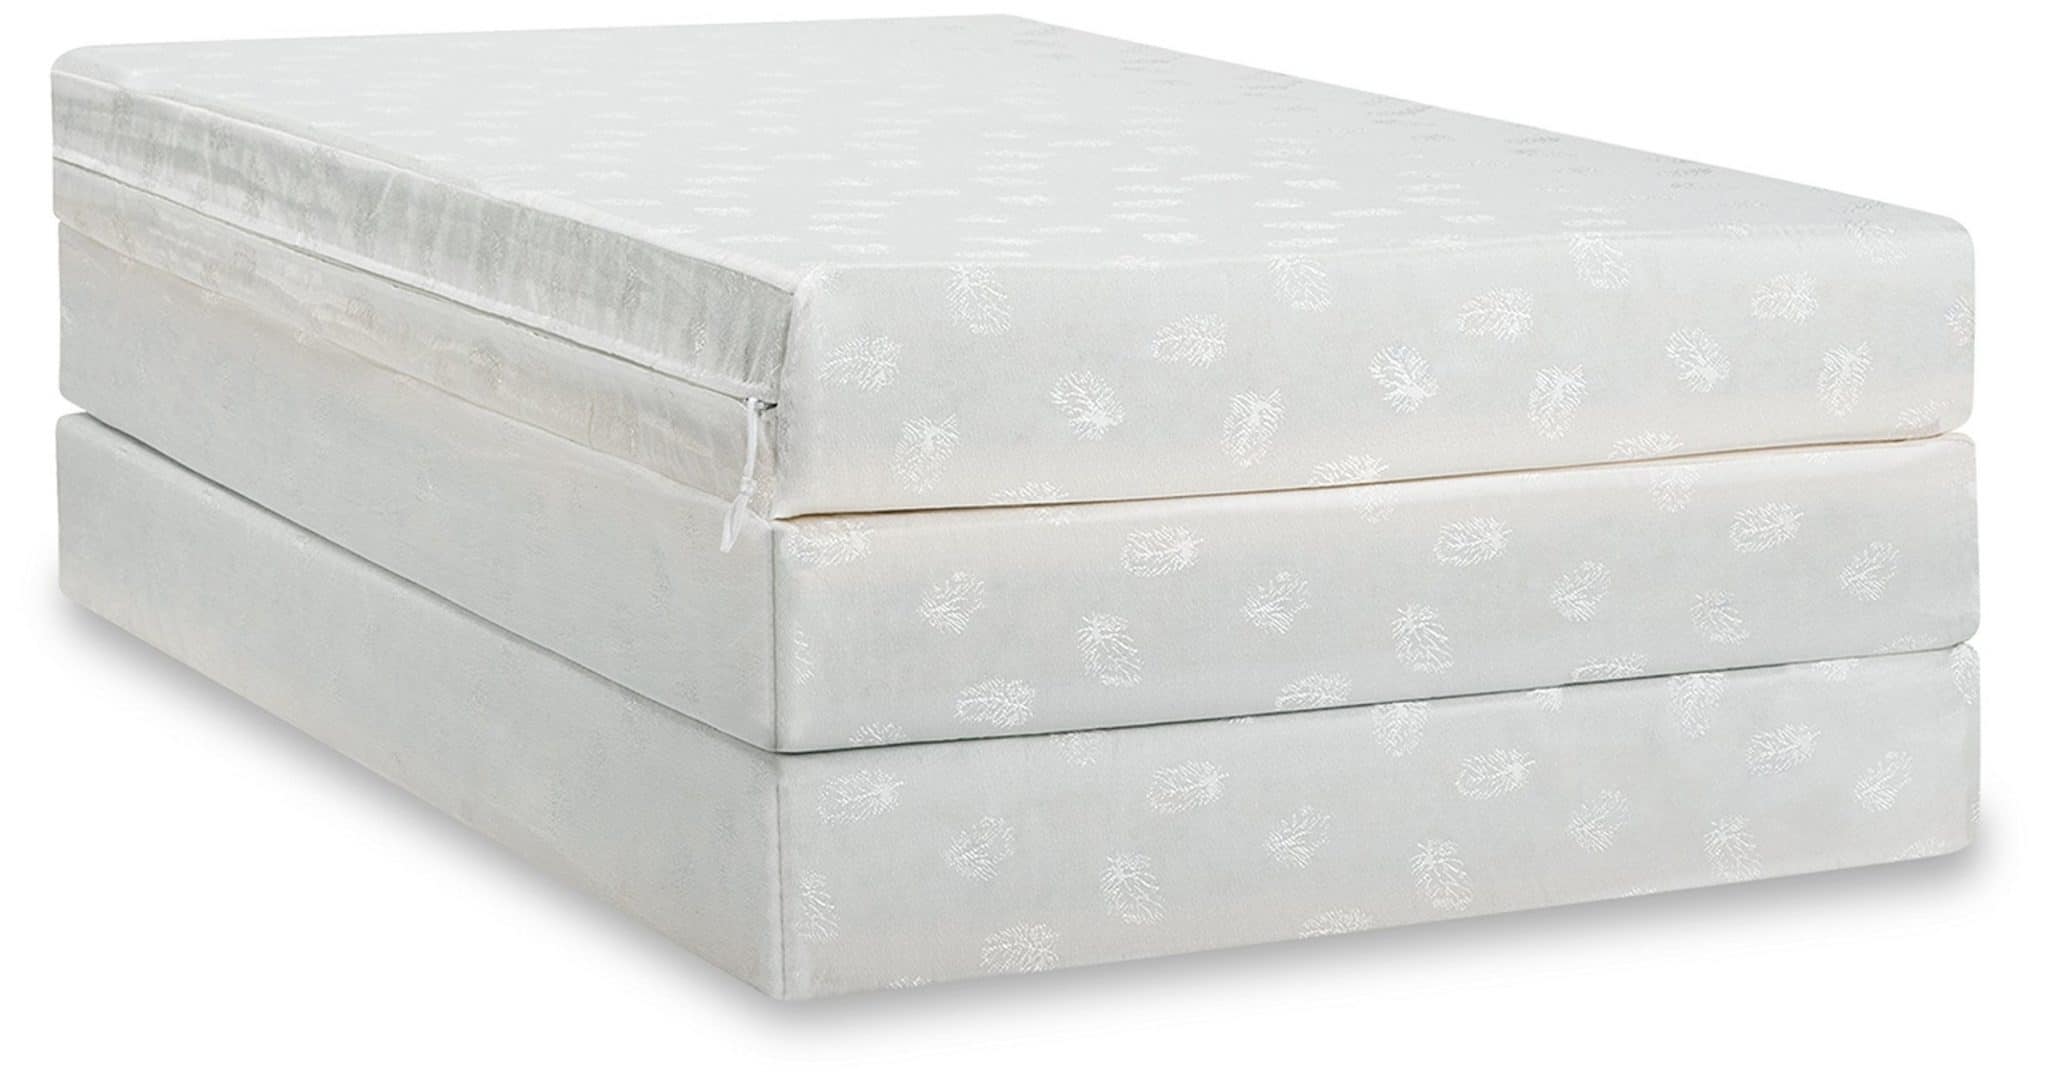 fold up mattress pad uk